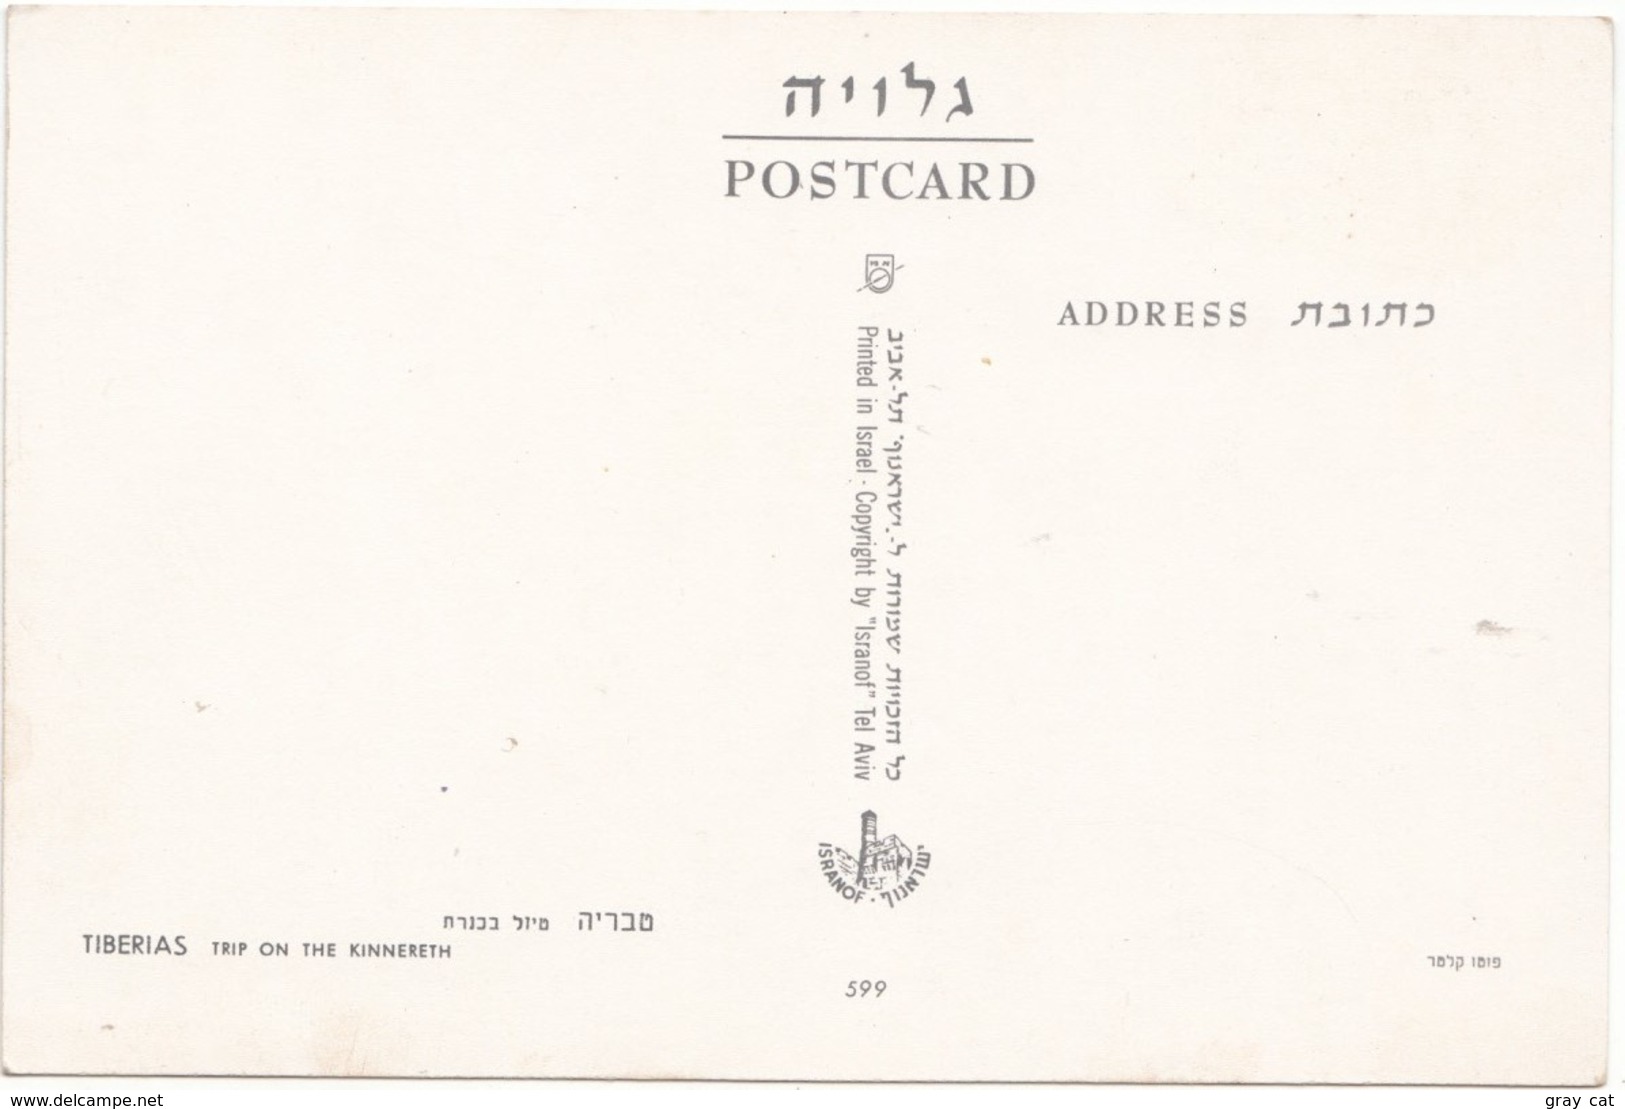 TIBERIAS, Trip On The KINNERETH, Lake Of Galilee, Israel, 1950s-60s, Unused Postcard [21643] - Israel